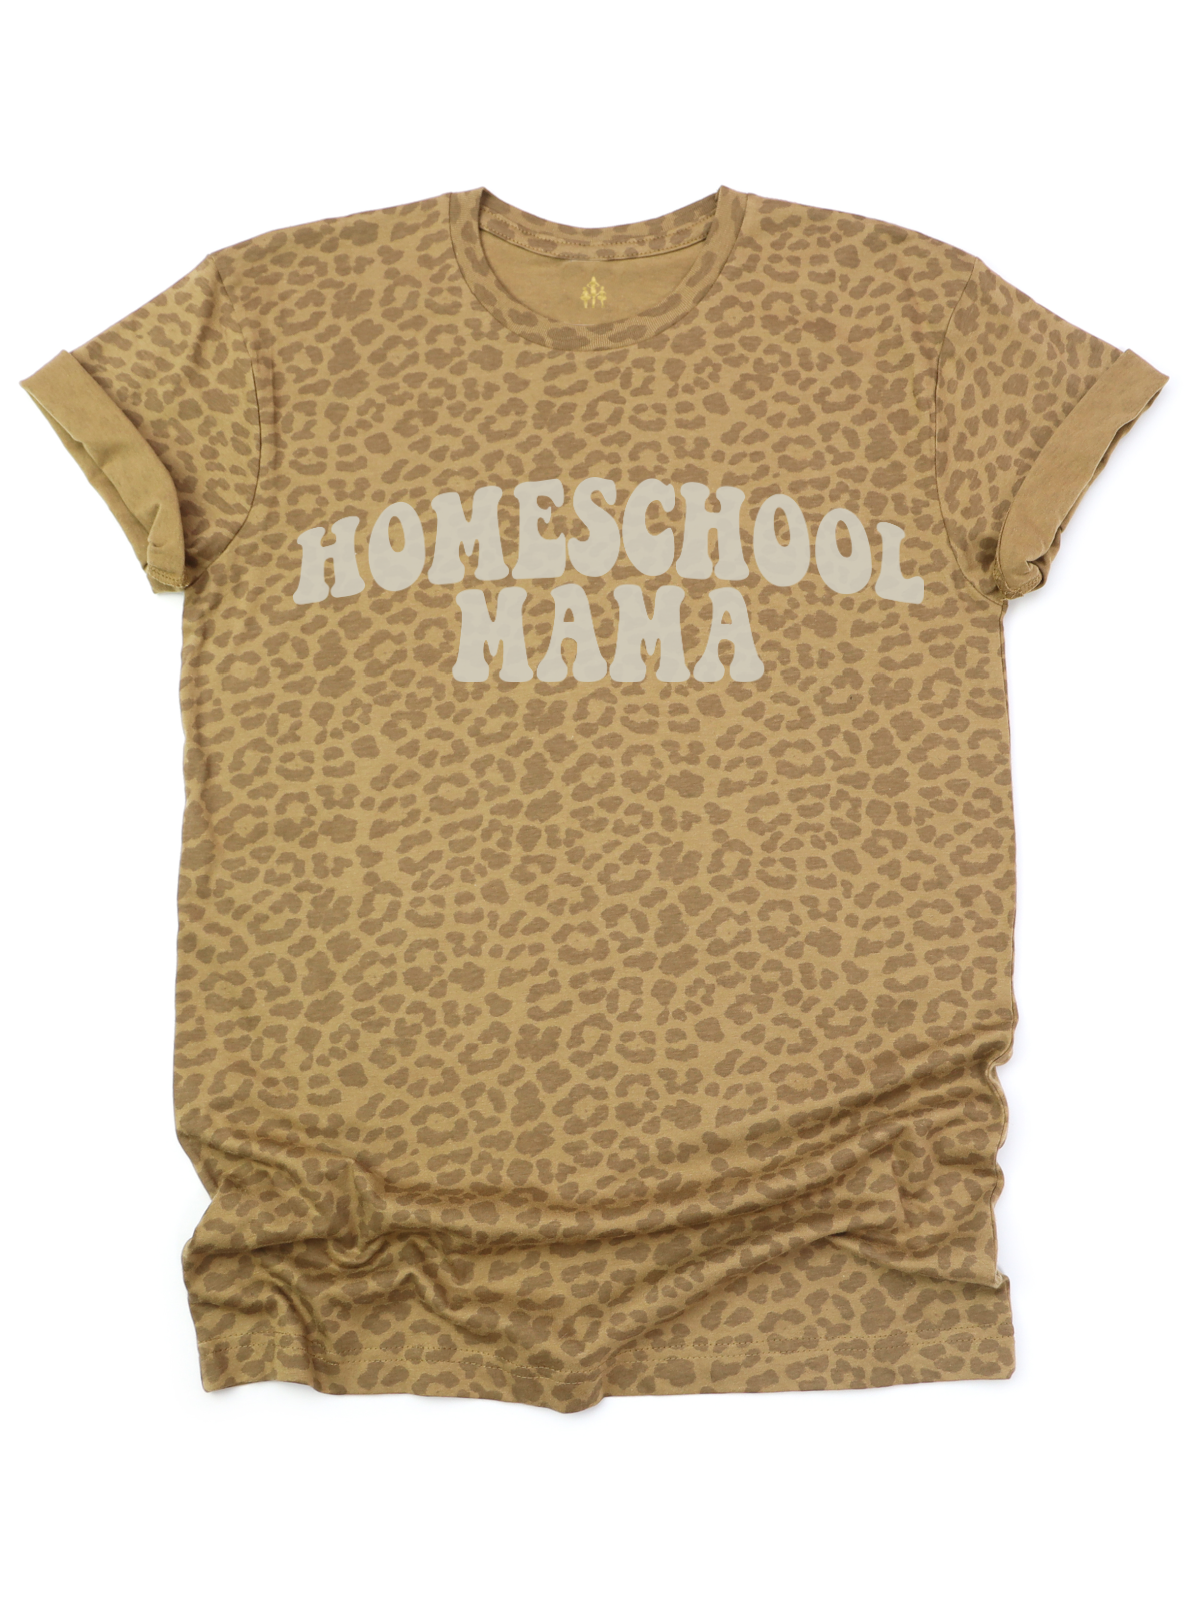 Homeschool Mama Boxy Tee in Leopard